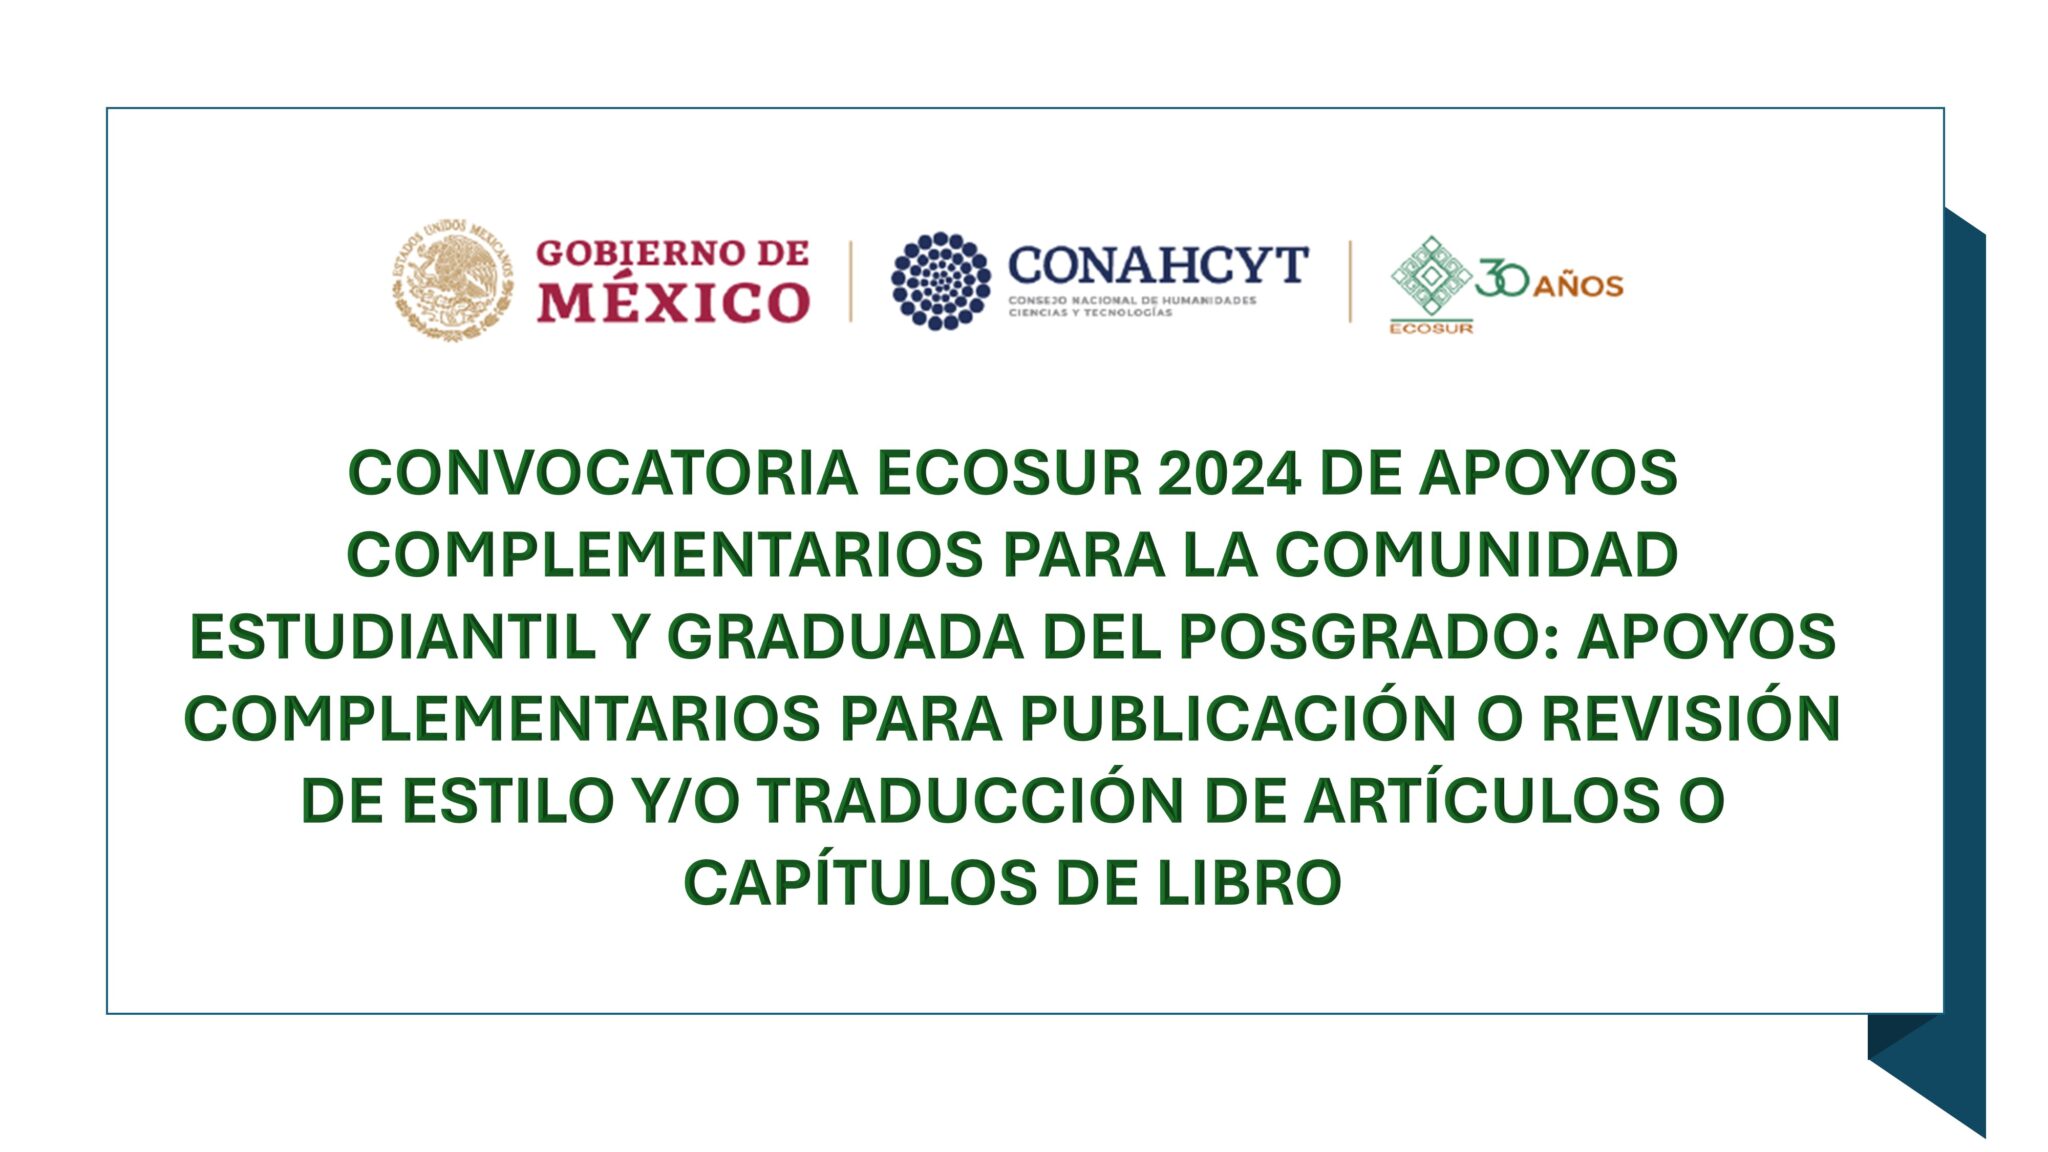 CONVOCATORIA ECOSUR 2024 DE APOYOS COMPLEMENTARIOS PARA LA COMUNIDAD ESTUDIANTIL Y GRADUADA DEL POSGRADO: APOYOS COMPLEMENTARIOS PARA PUBLICACIÓN O REVISIÓN DE ESTILO Y/O TRADUCCIÓN DE ARTÍCULOS O CAPÍTULOS DE LIBRO